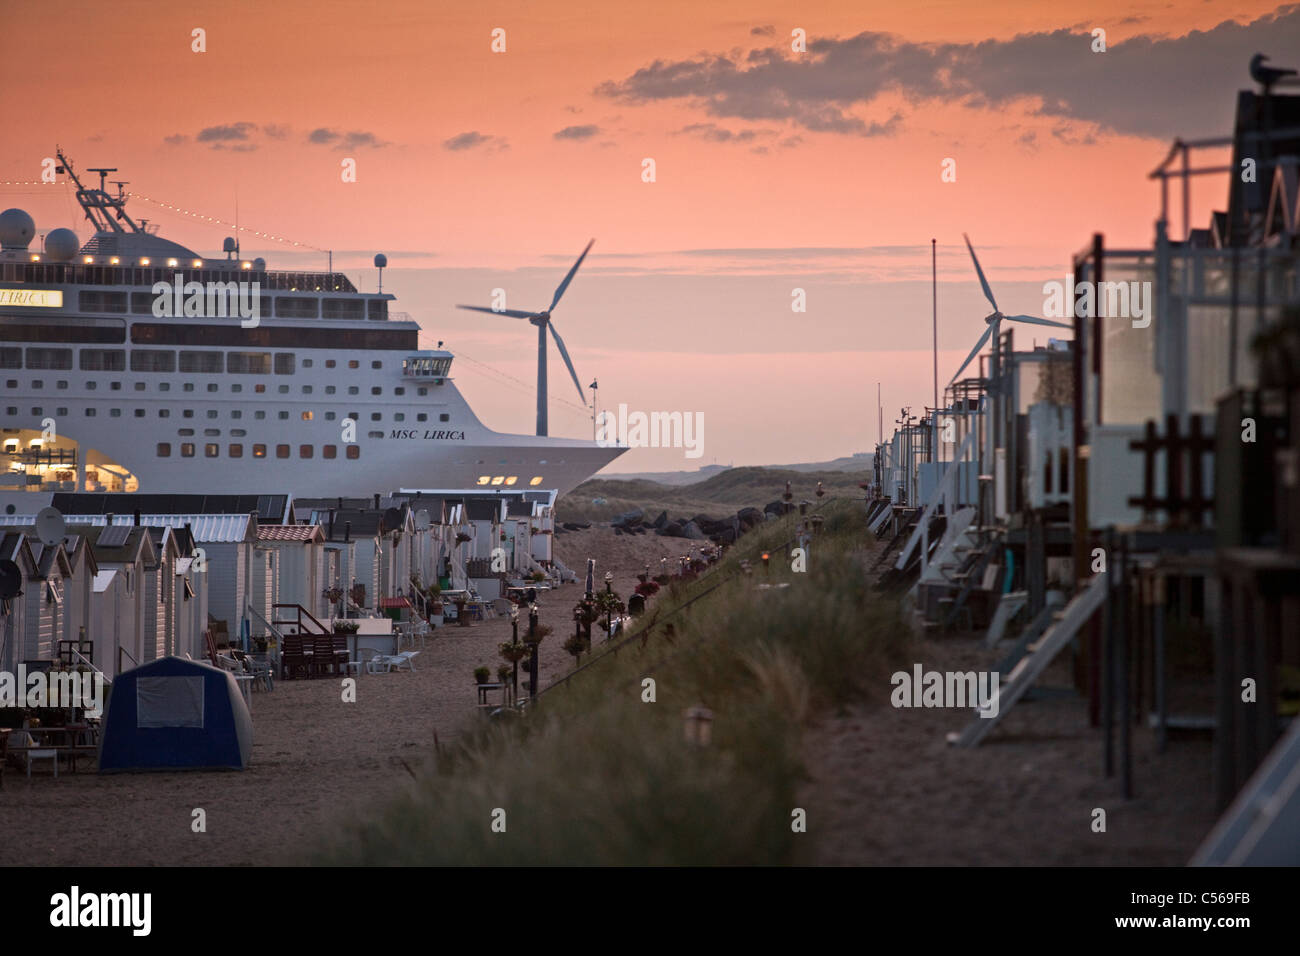 Les Pays-Bas, IJmuiden, bateau de croisière arrivant à Canal de la mer du Nord. Le lever du soleil. Cabines de plage. Banque D'Images